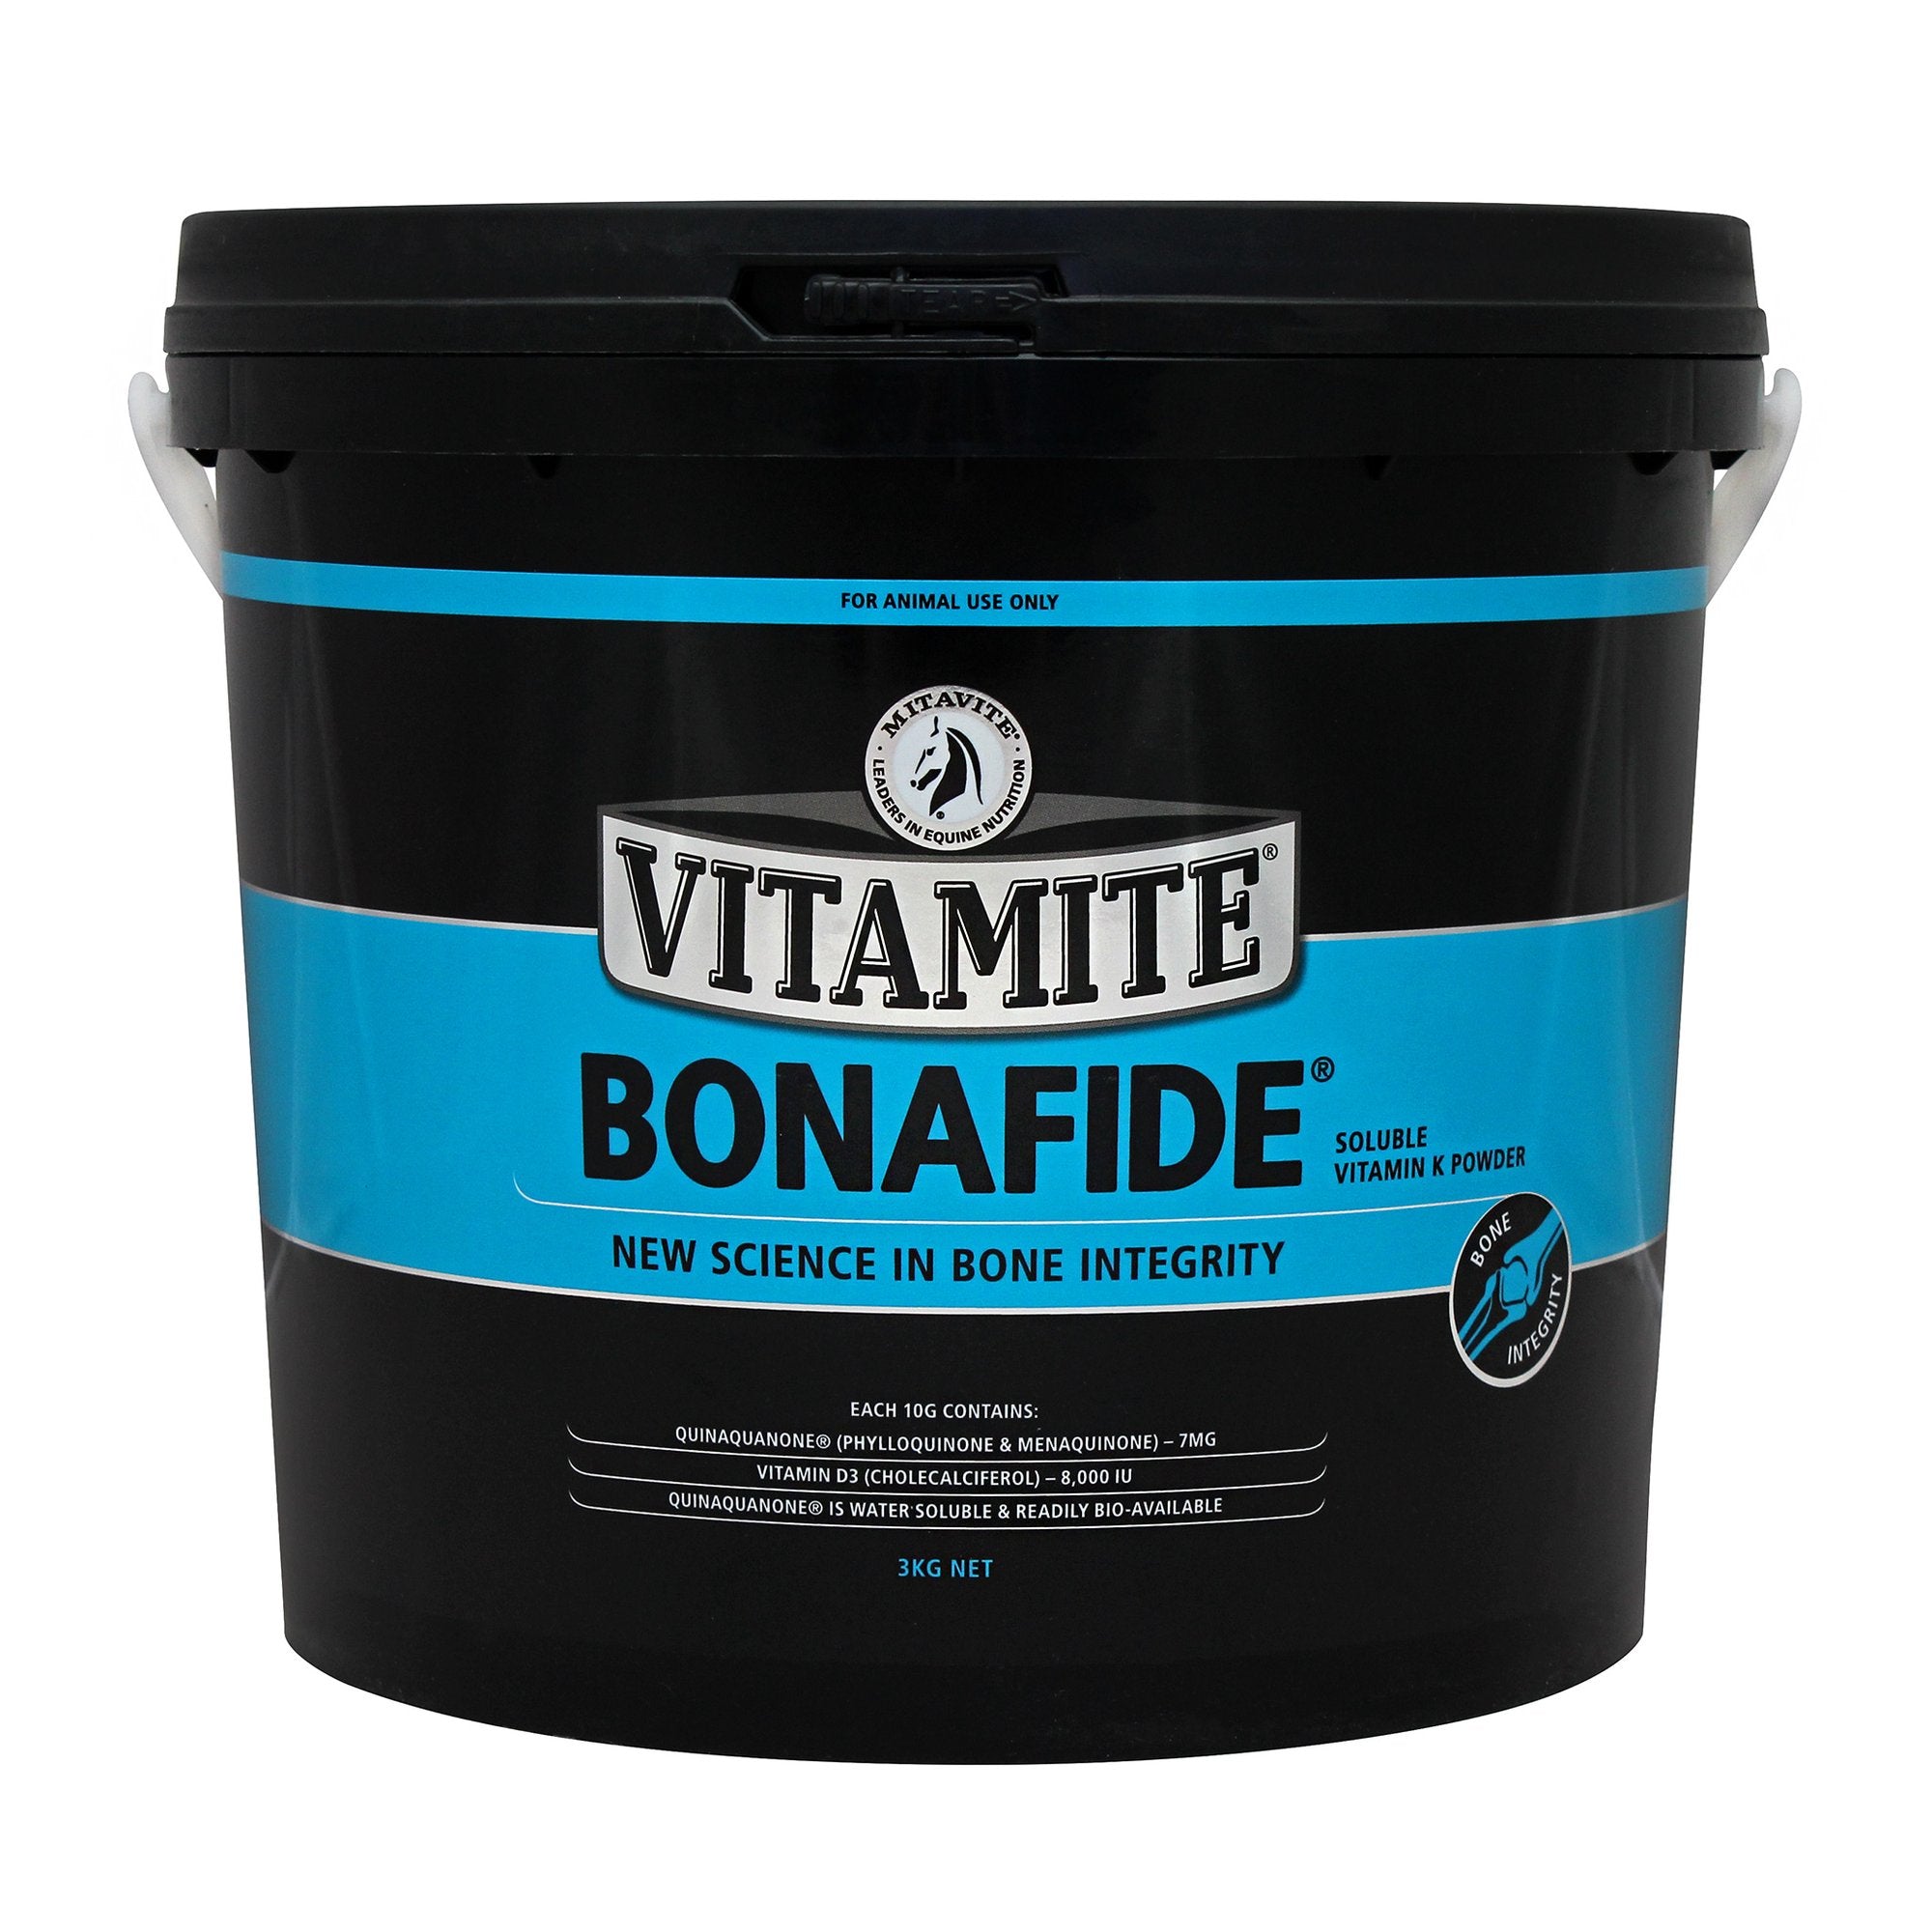 VitaMite Bonafide Q